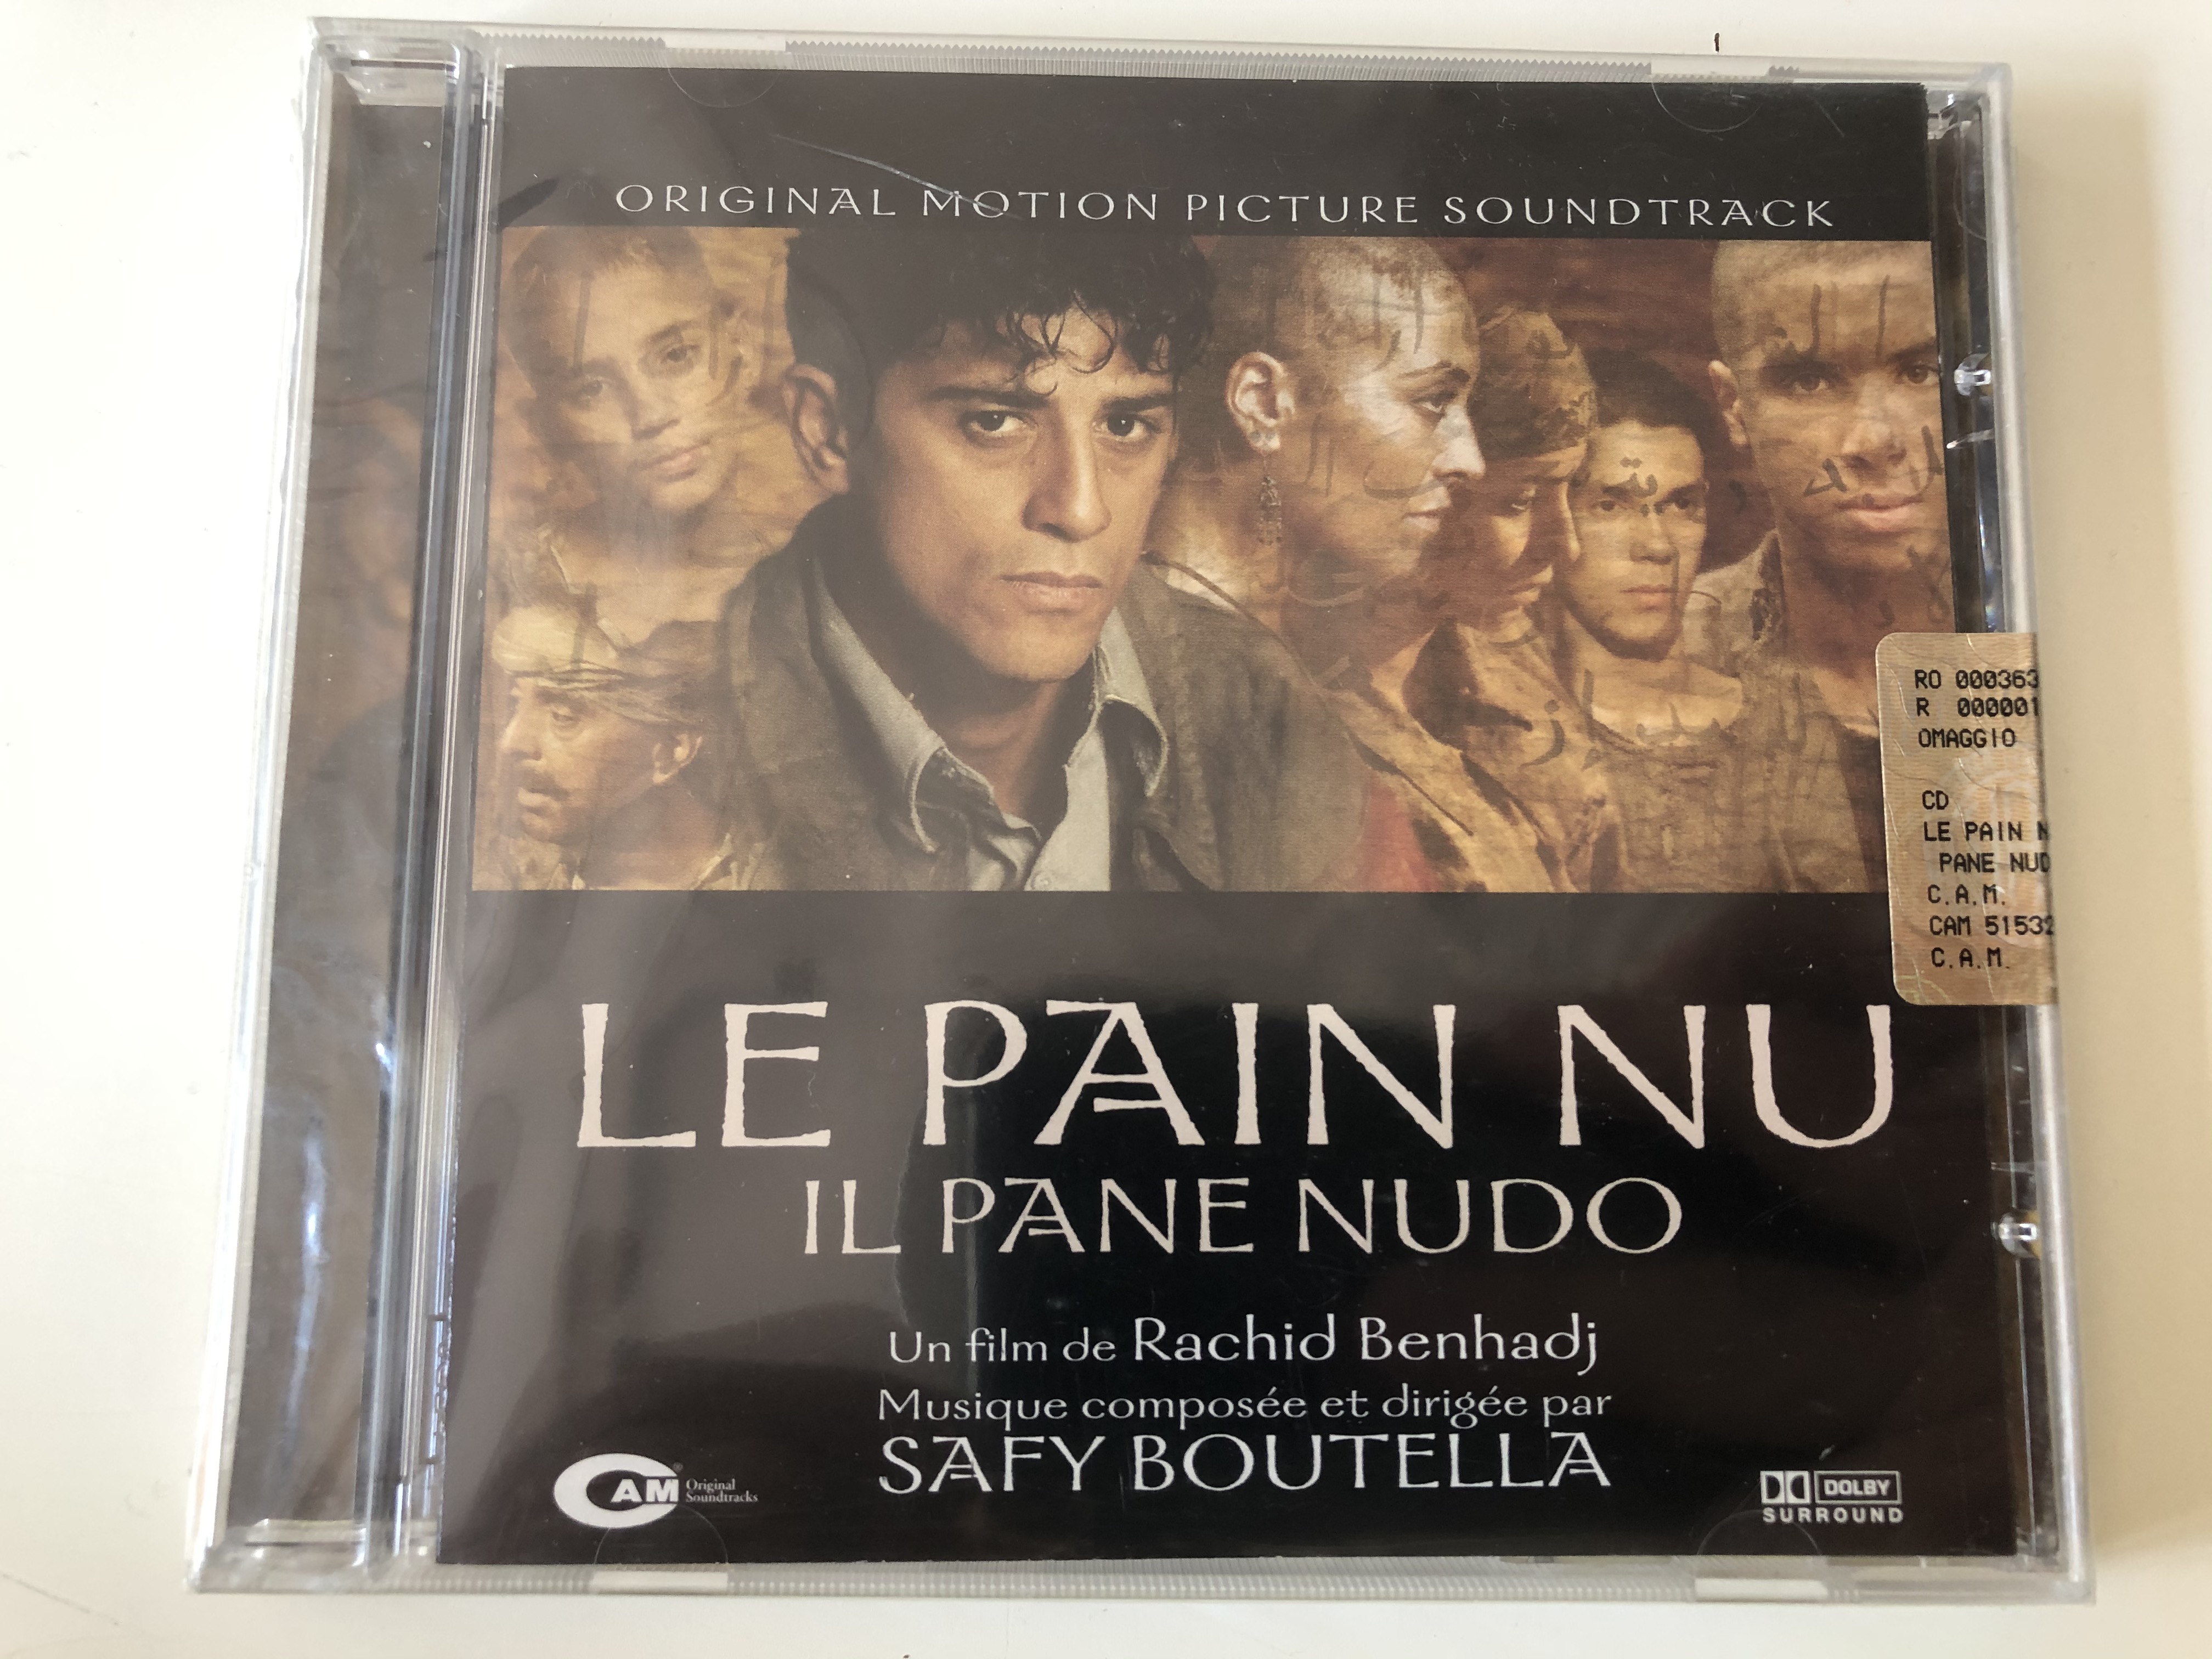 original-motion-picture-soundtrack-le-pain-nu-il-pane-nudo-un-film-de-rachid-benhadj-musique-composee-et-dirigee-par-safy-boutella-cam-audio-cd-2005-cam-515328-2-1-.jpg